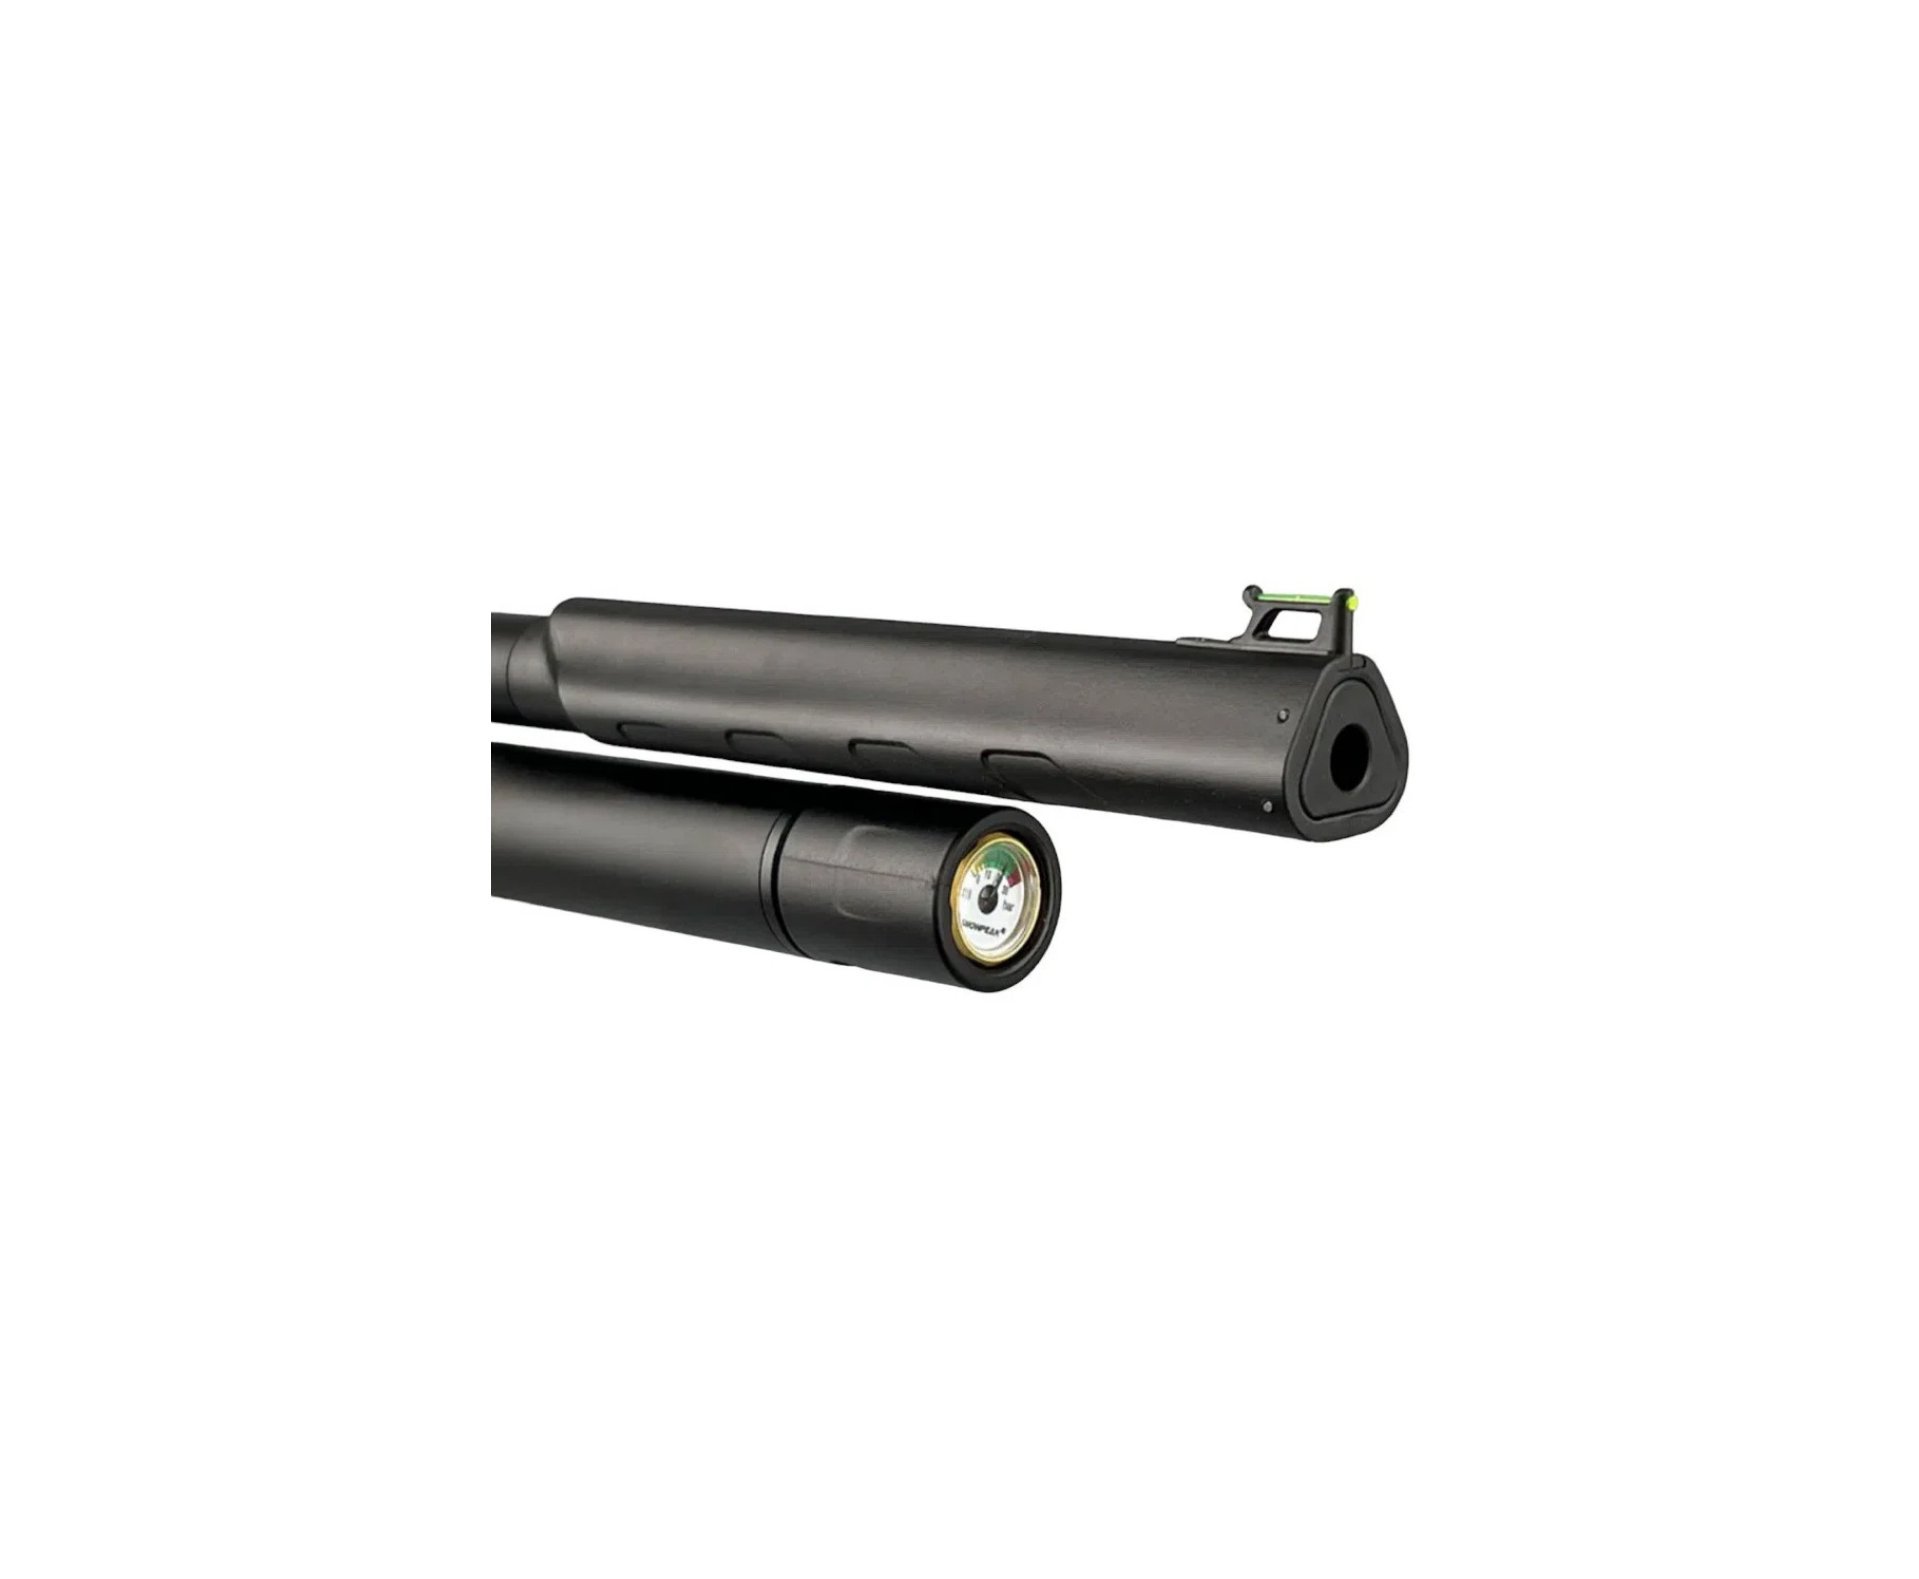 Carabina de Pressão PCP Artemis T-REX 5.5mm com Válvula Reguladora - Fixxar + Bomba + Capa